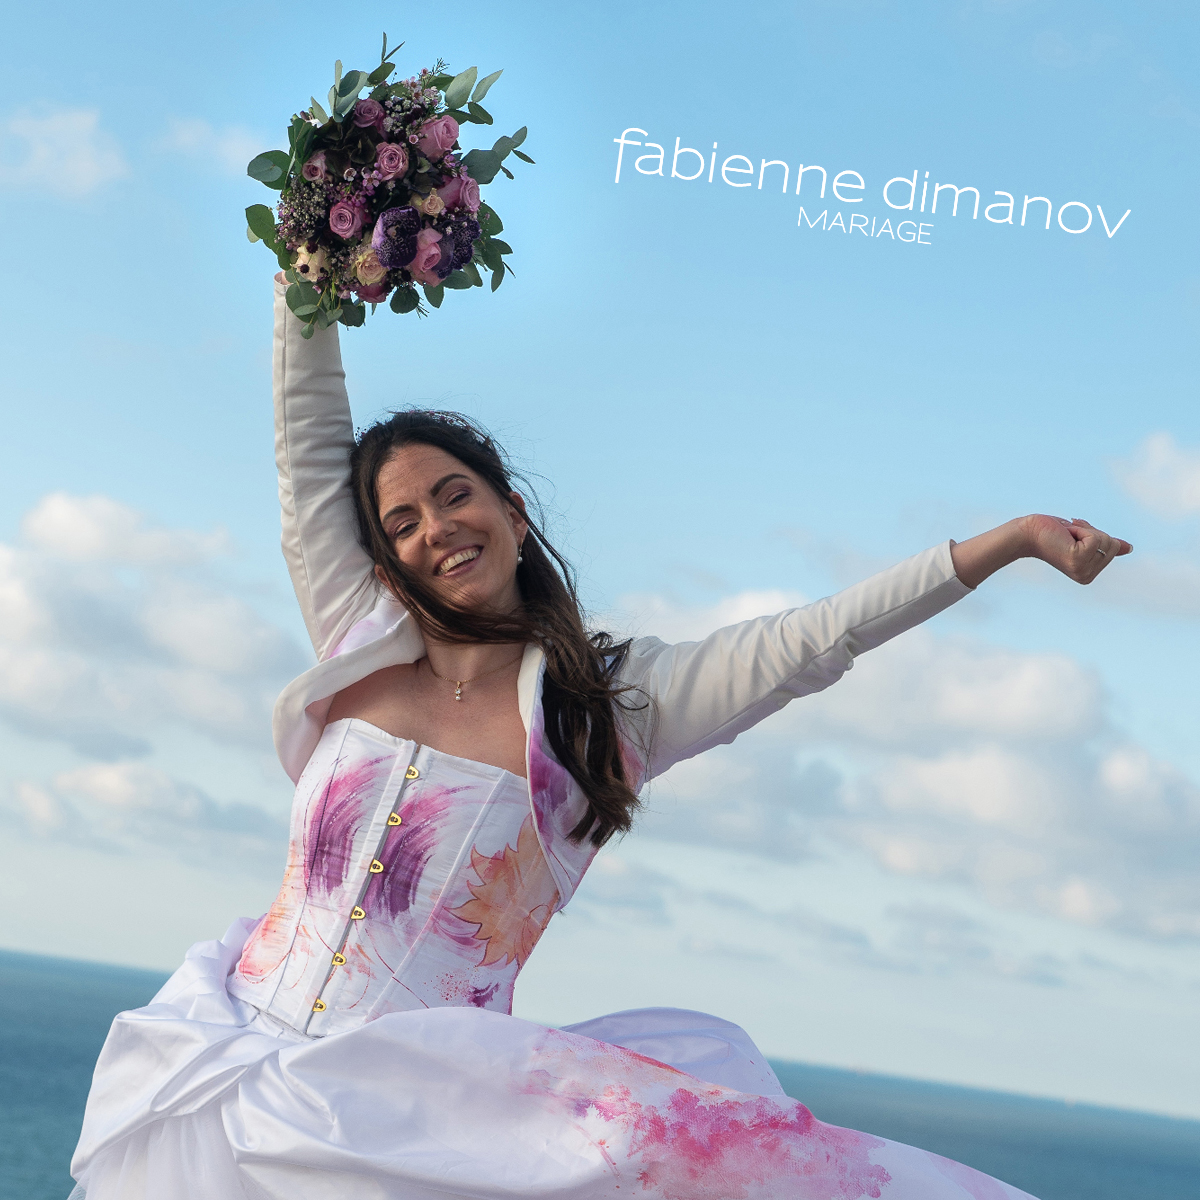 La mariée heureuse - mariée rose camaieu - Fabienne Dimanov Mariage